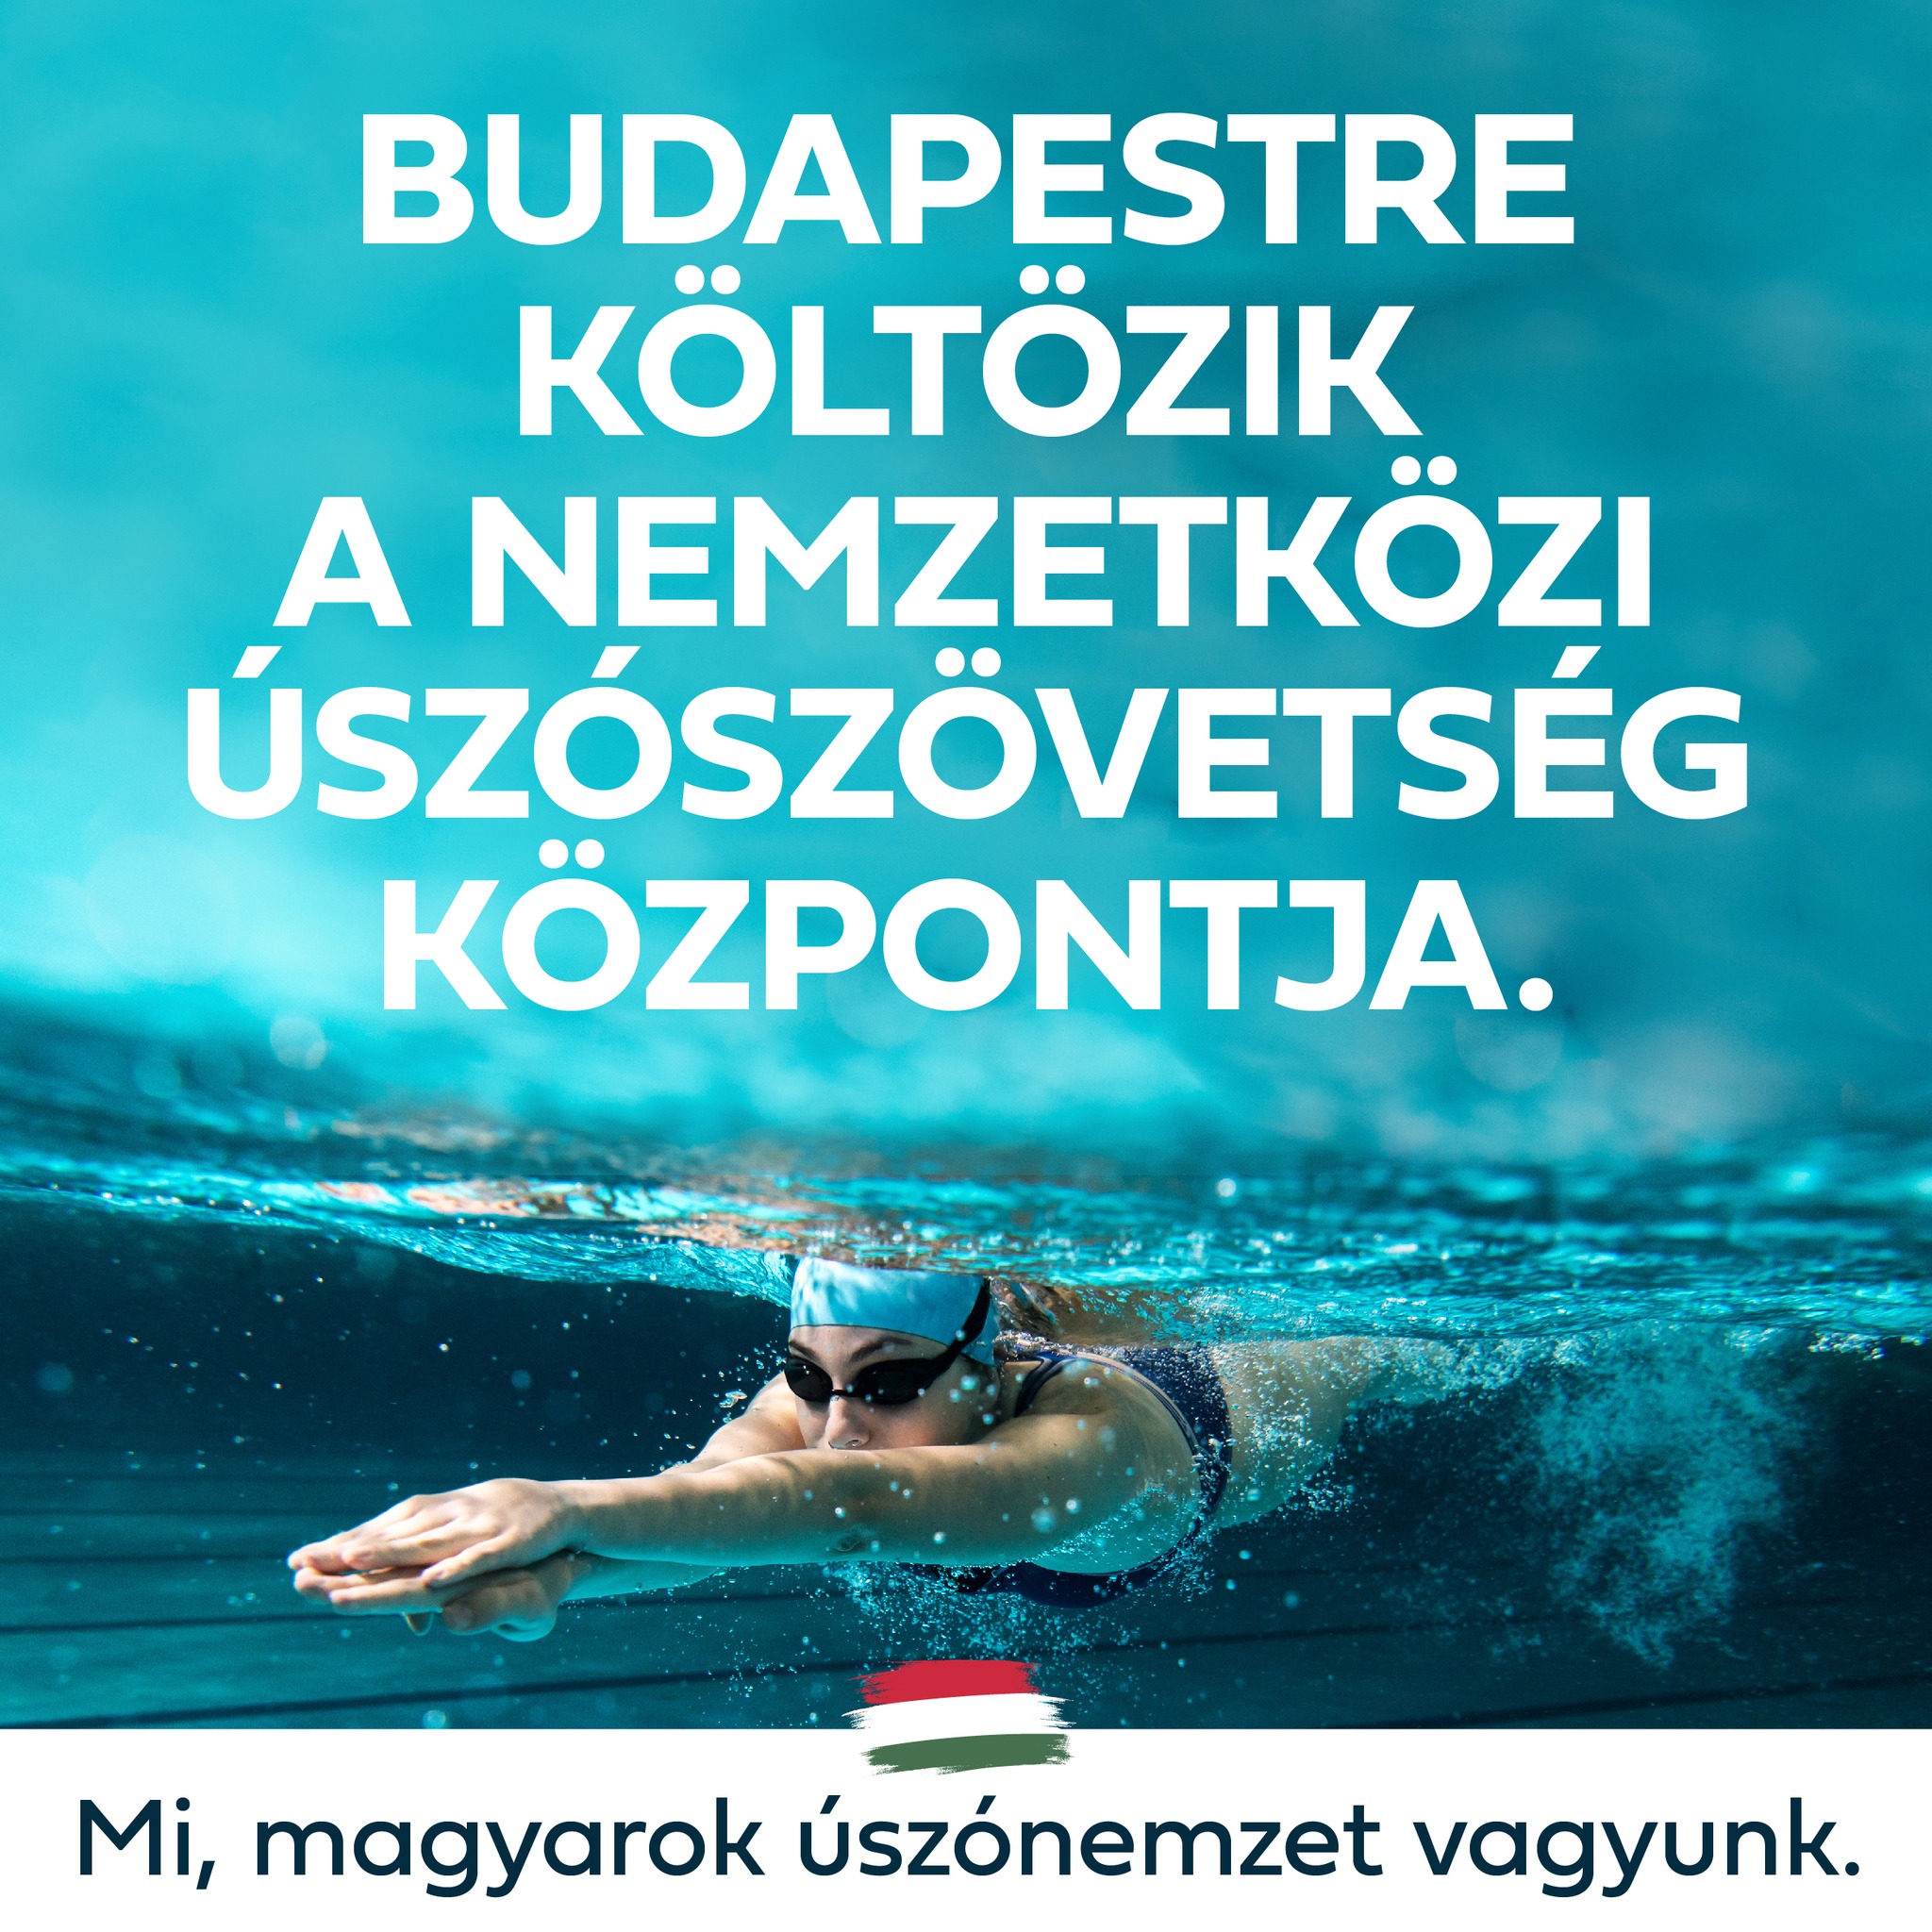 Hazánk kiemelt szerepet játszik a világ úszósportjában, a Budapestre költöző Nemzetközi Úszószövetség létrehozásakor is ott voltunk a nyolc alapító tag között.